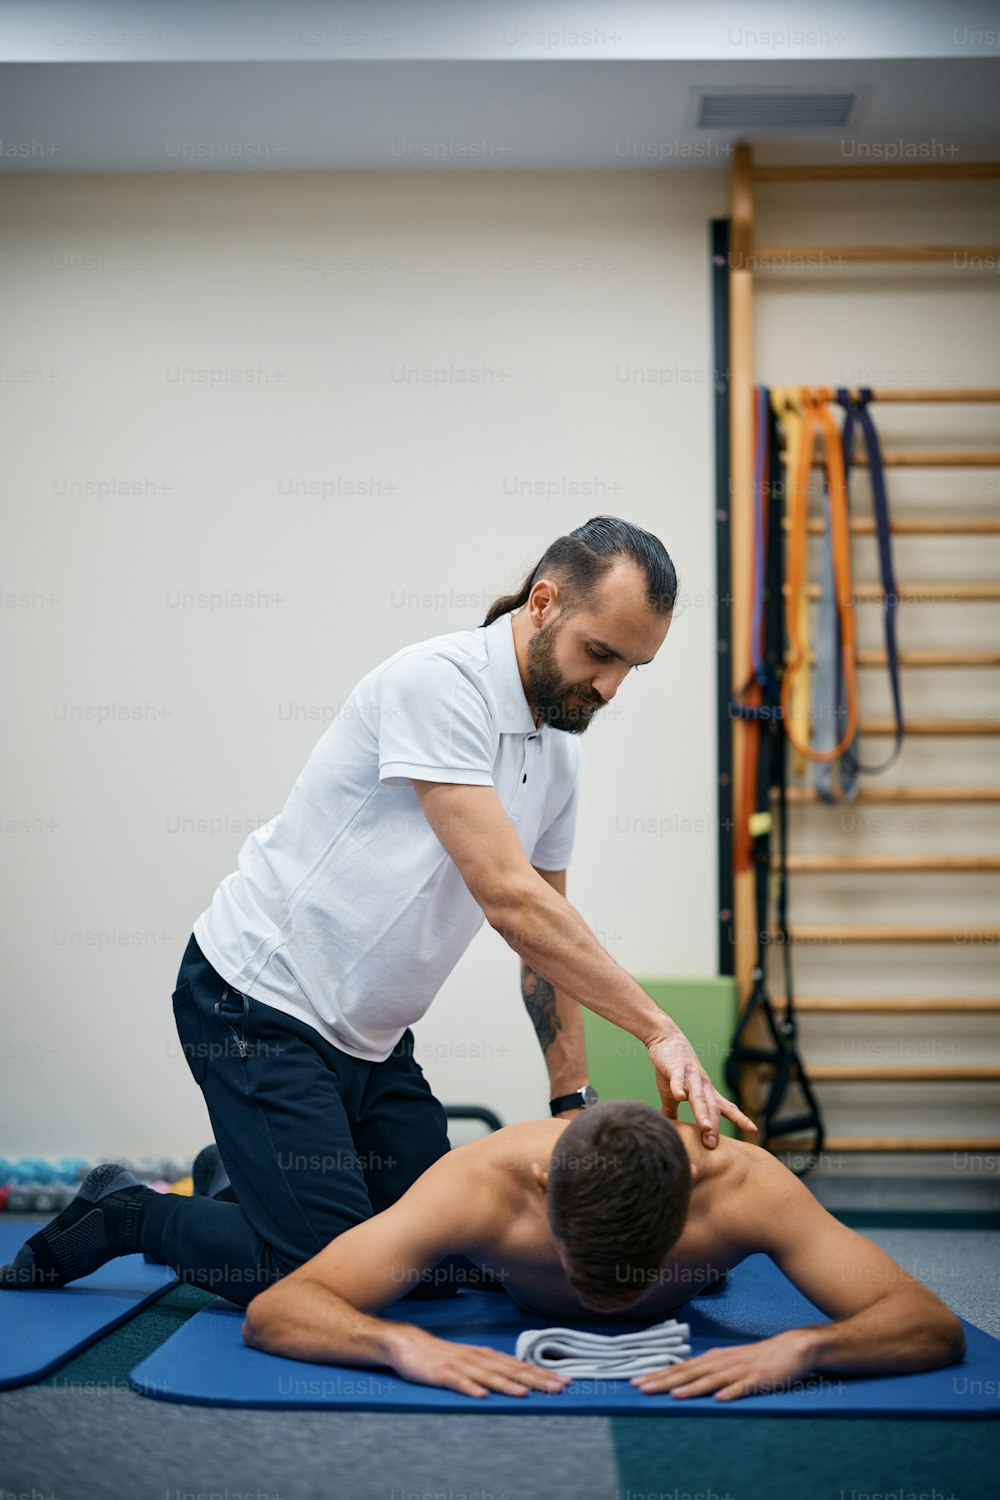 Fisioterapeuta massageando as costas de um esportista durante a terapia no centro de reabilitação.